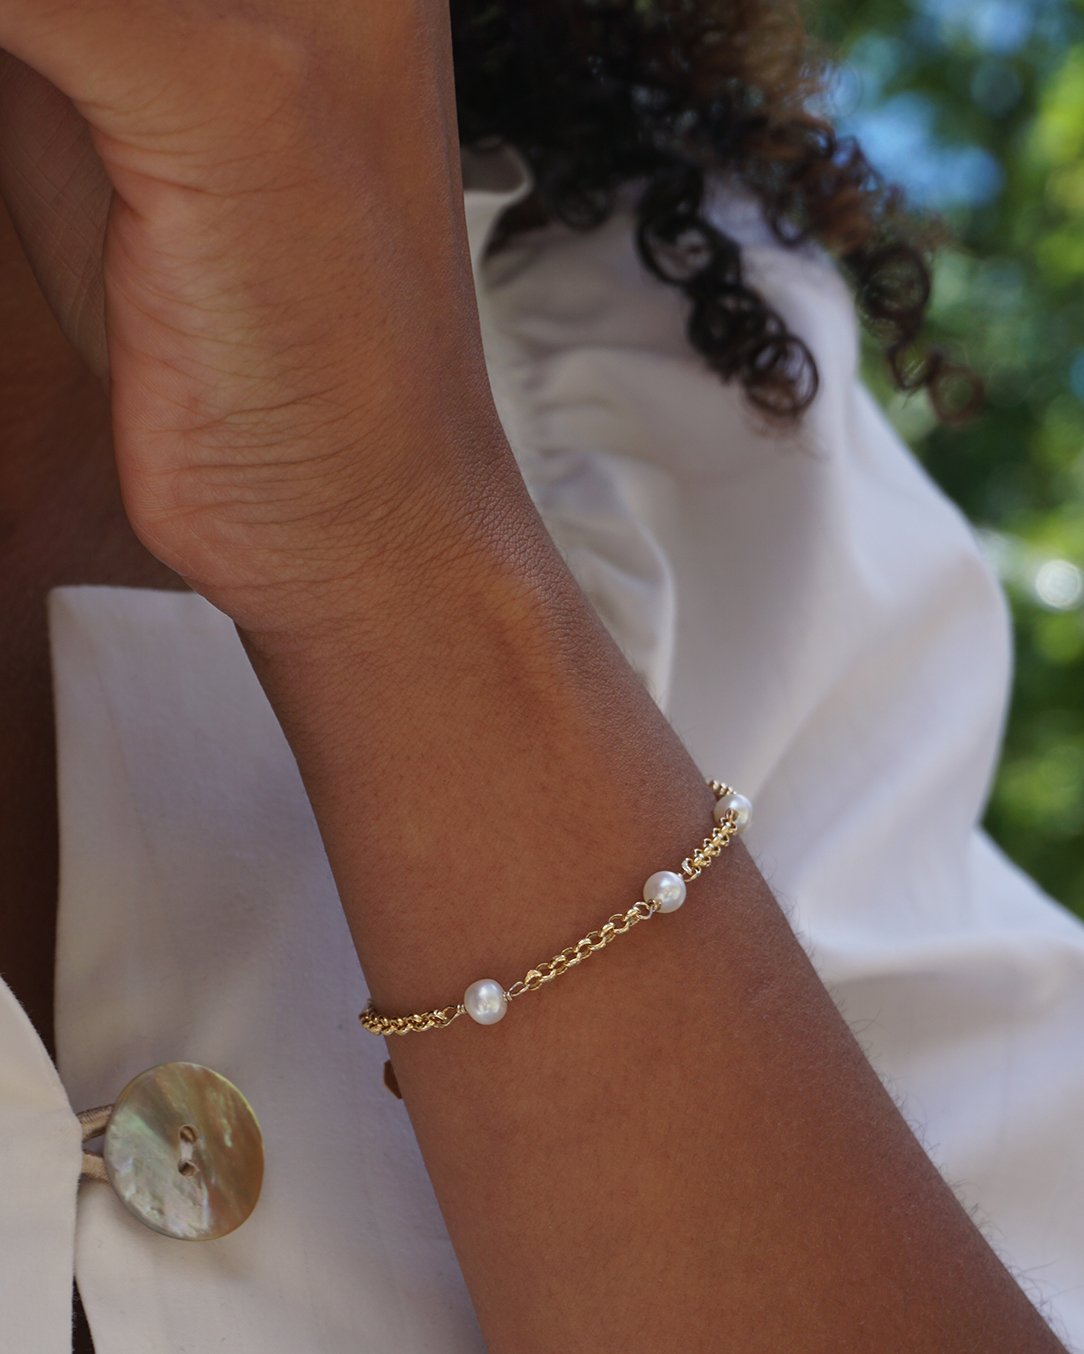 Bracelet Pom-pom en Or Jaune avec Perles Blanches